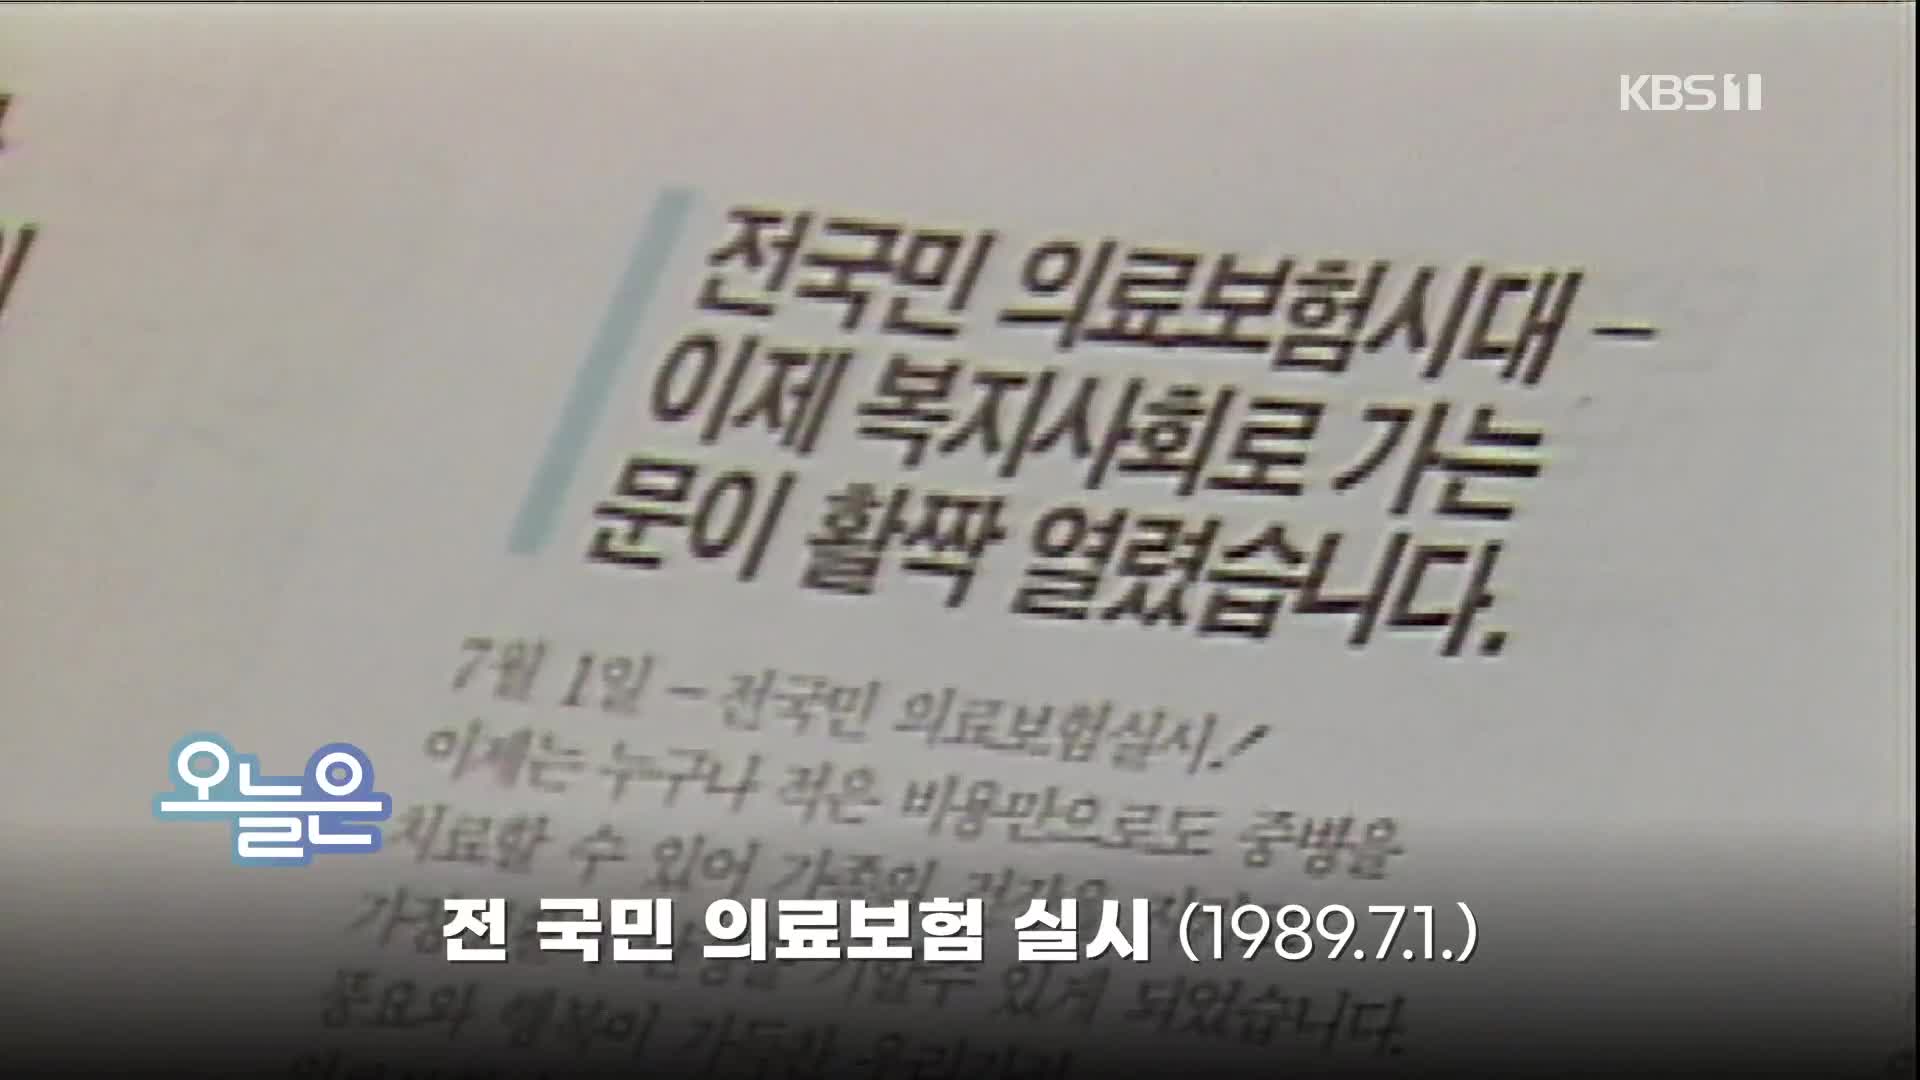 [오늘은] 전 국민 의료보험 실시(1989.7.1.)